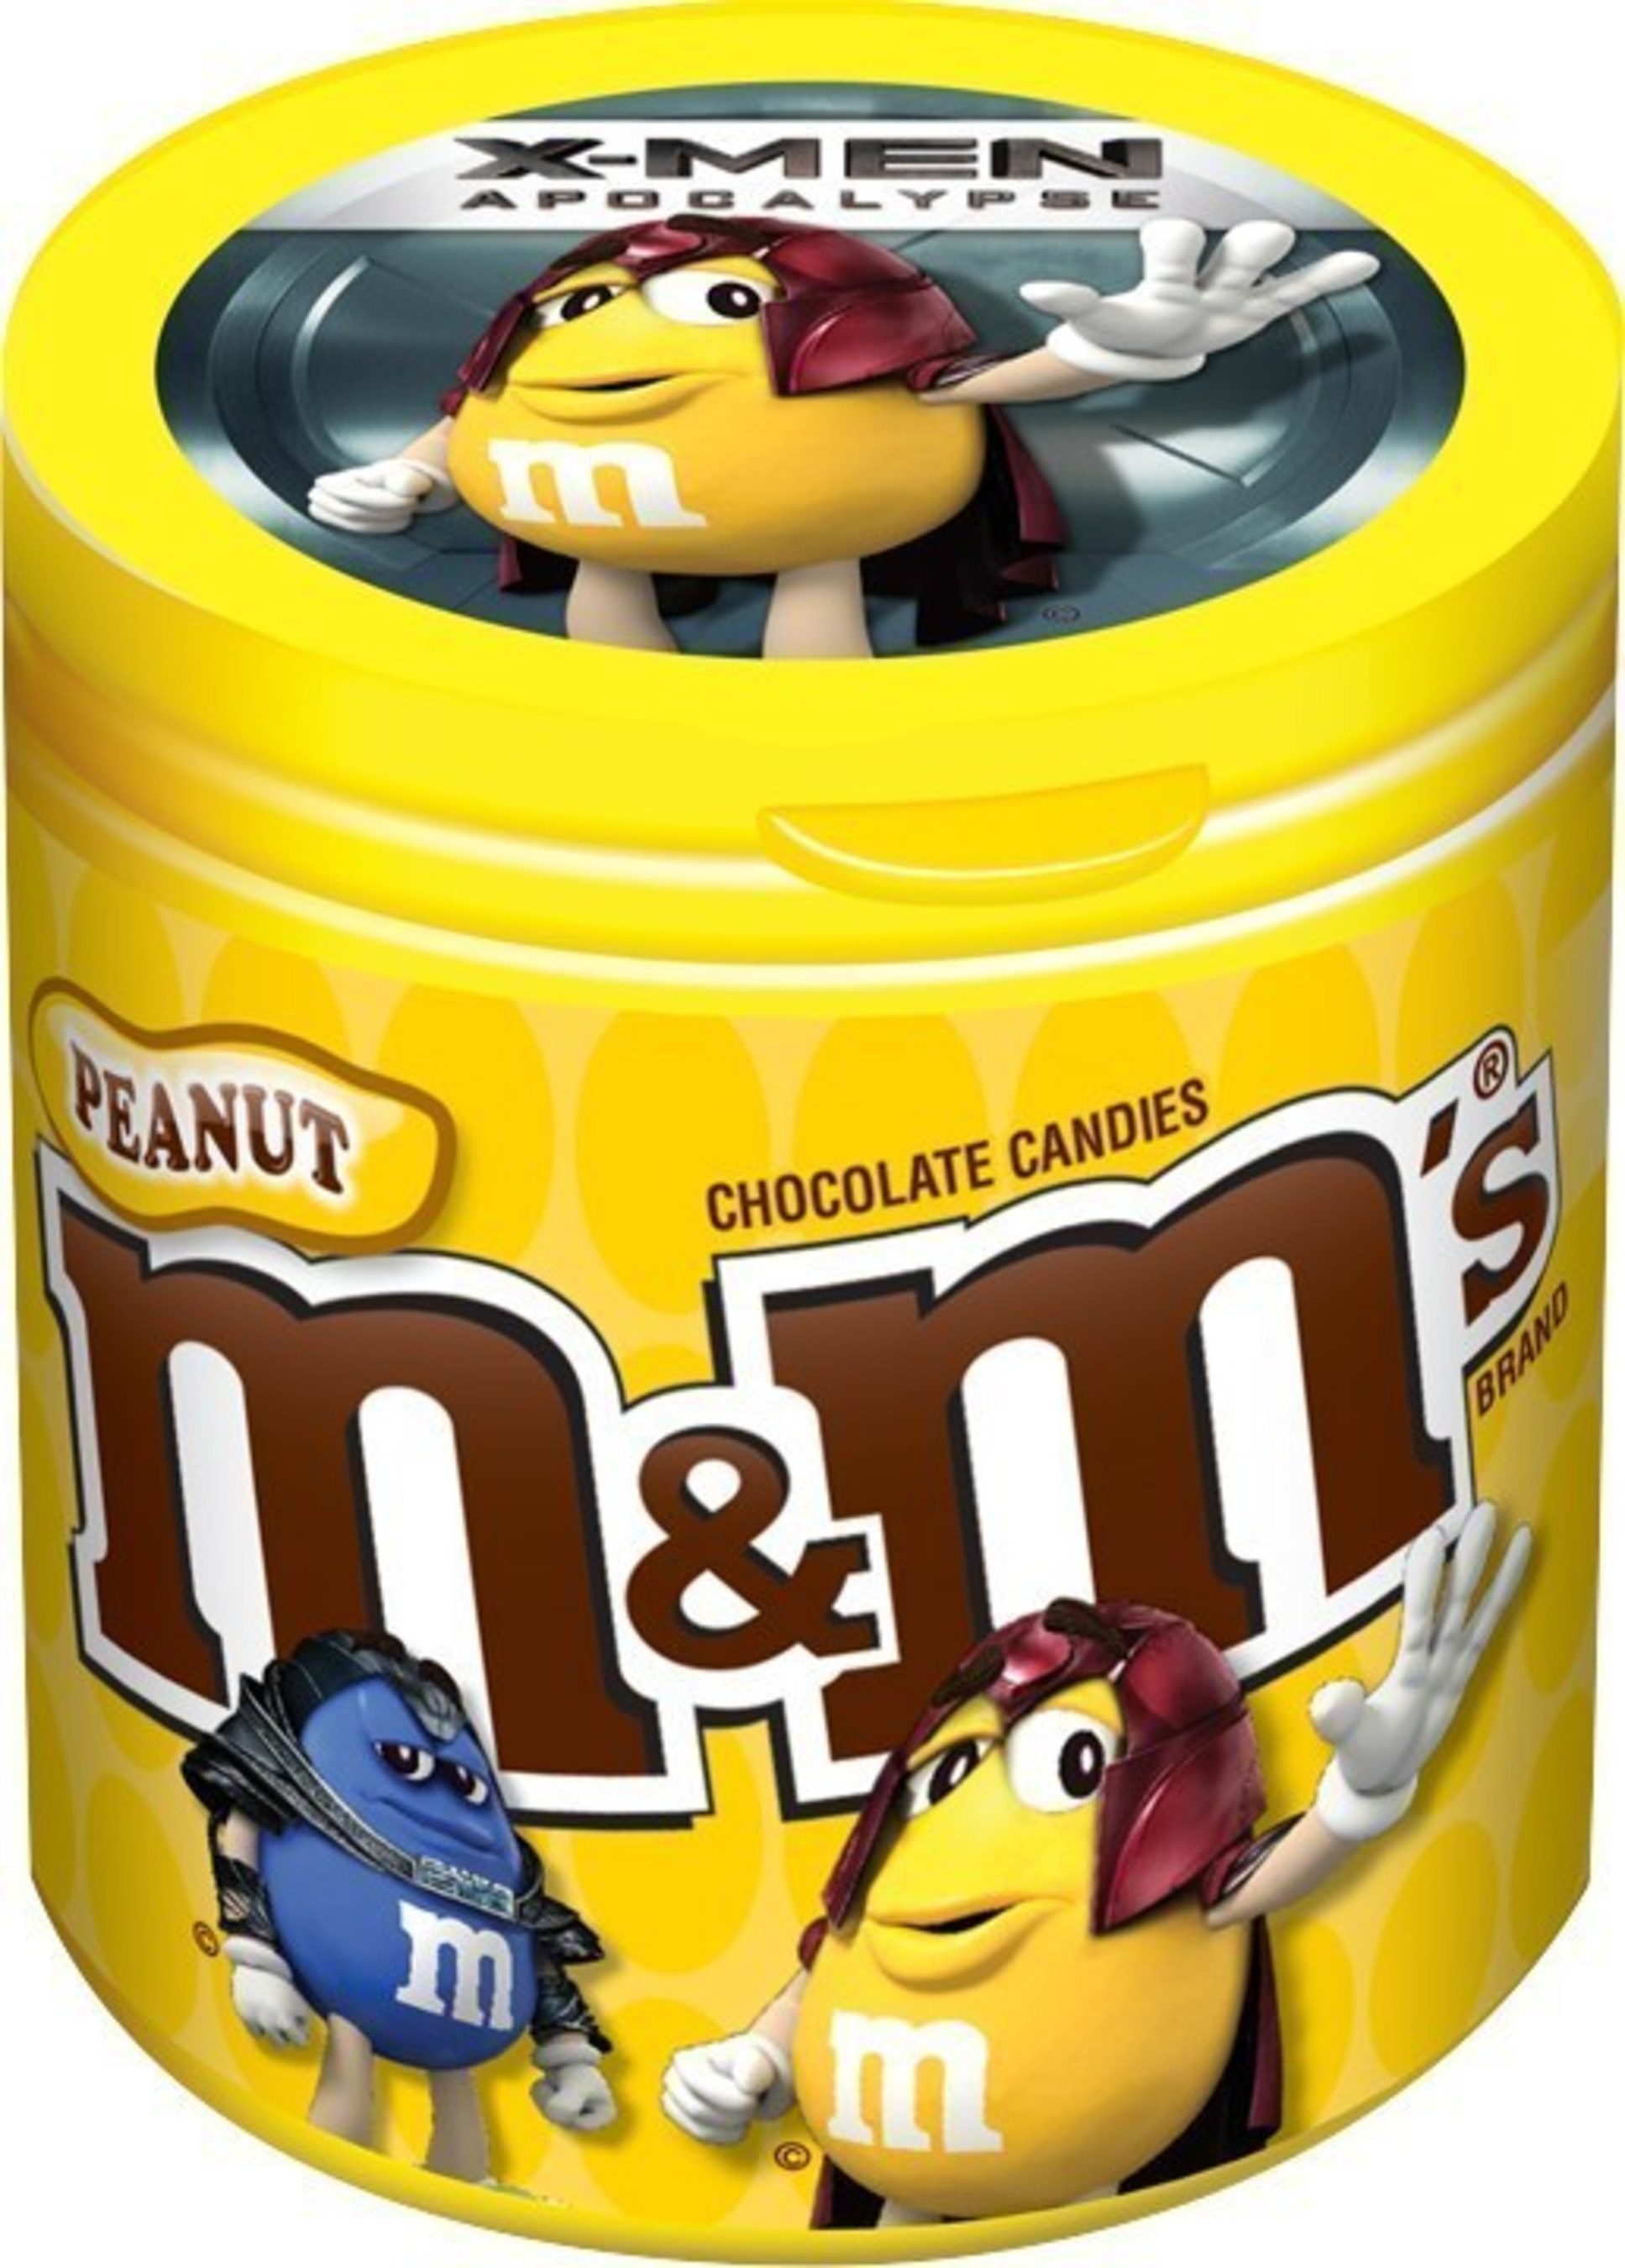 Those Tasty Peanut M&Mmmmmm's, by Jenn Trepeck